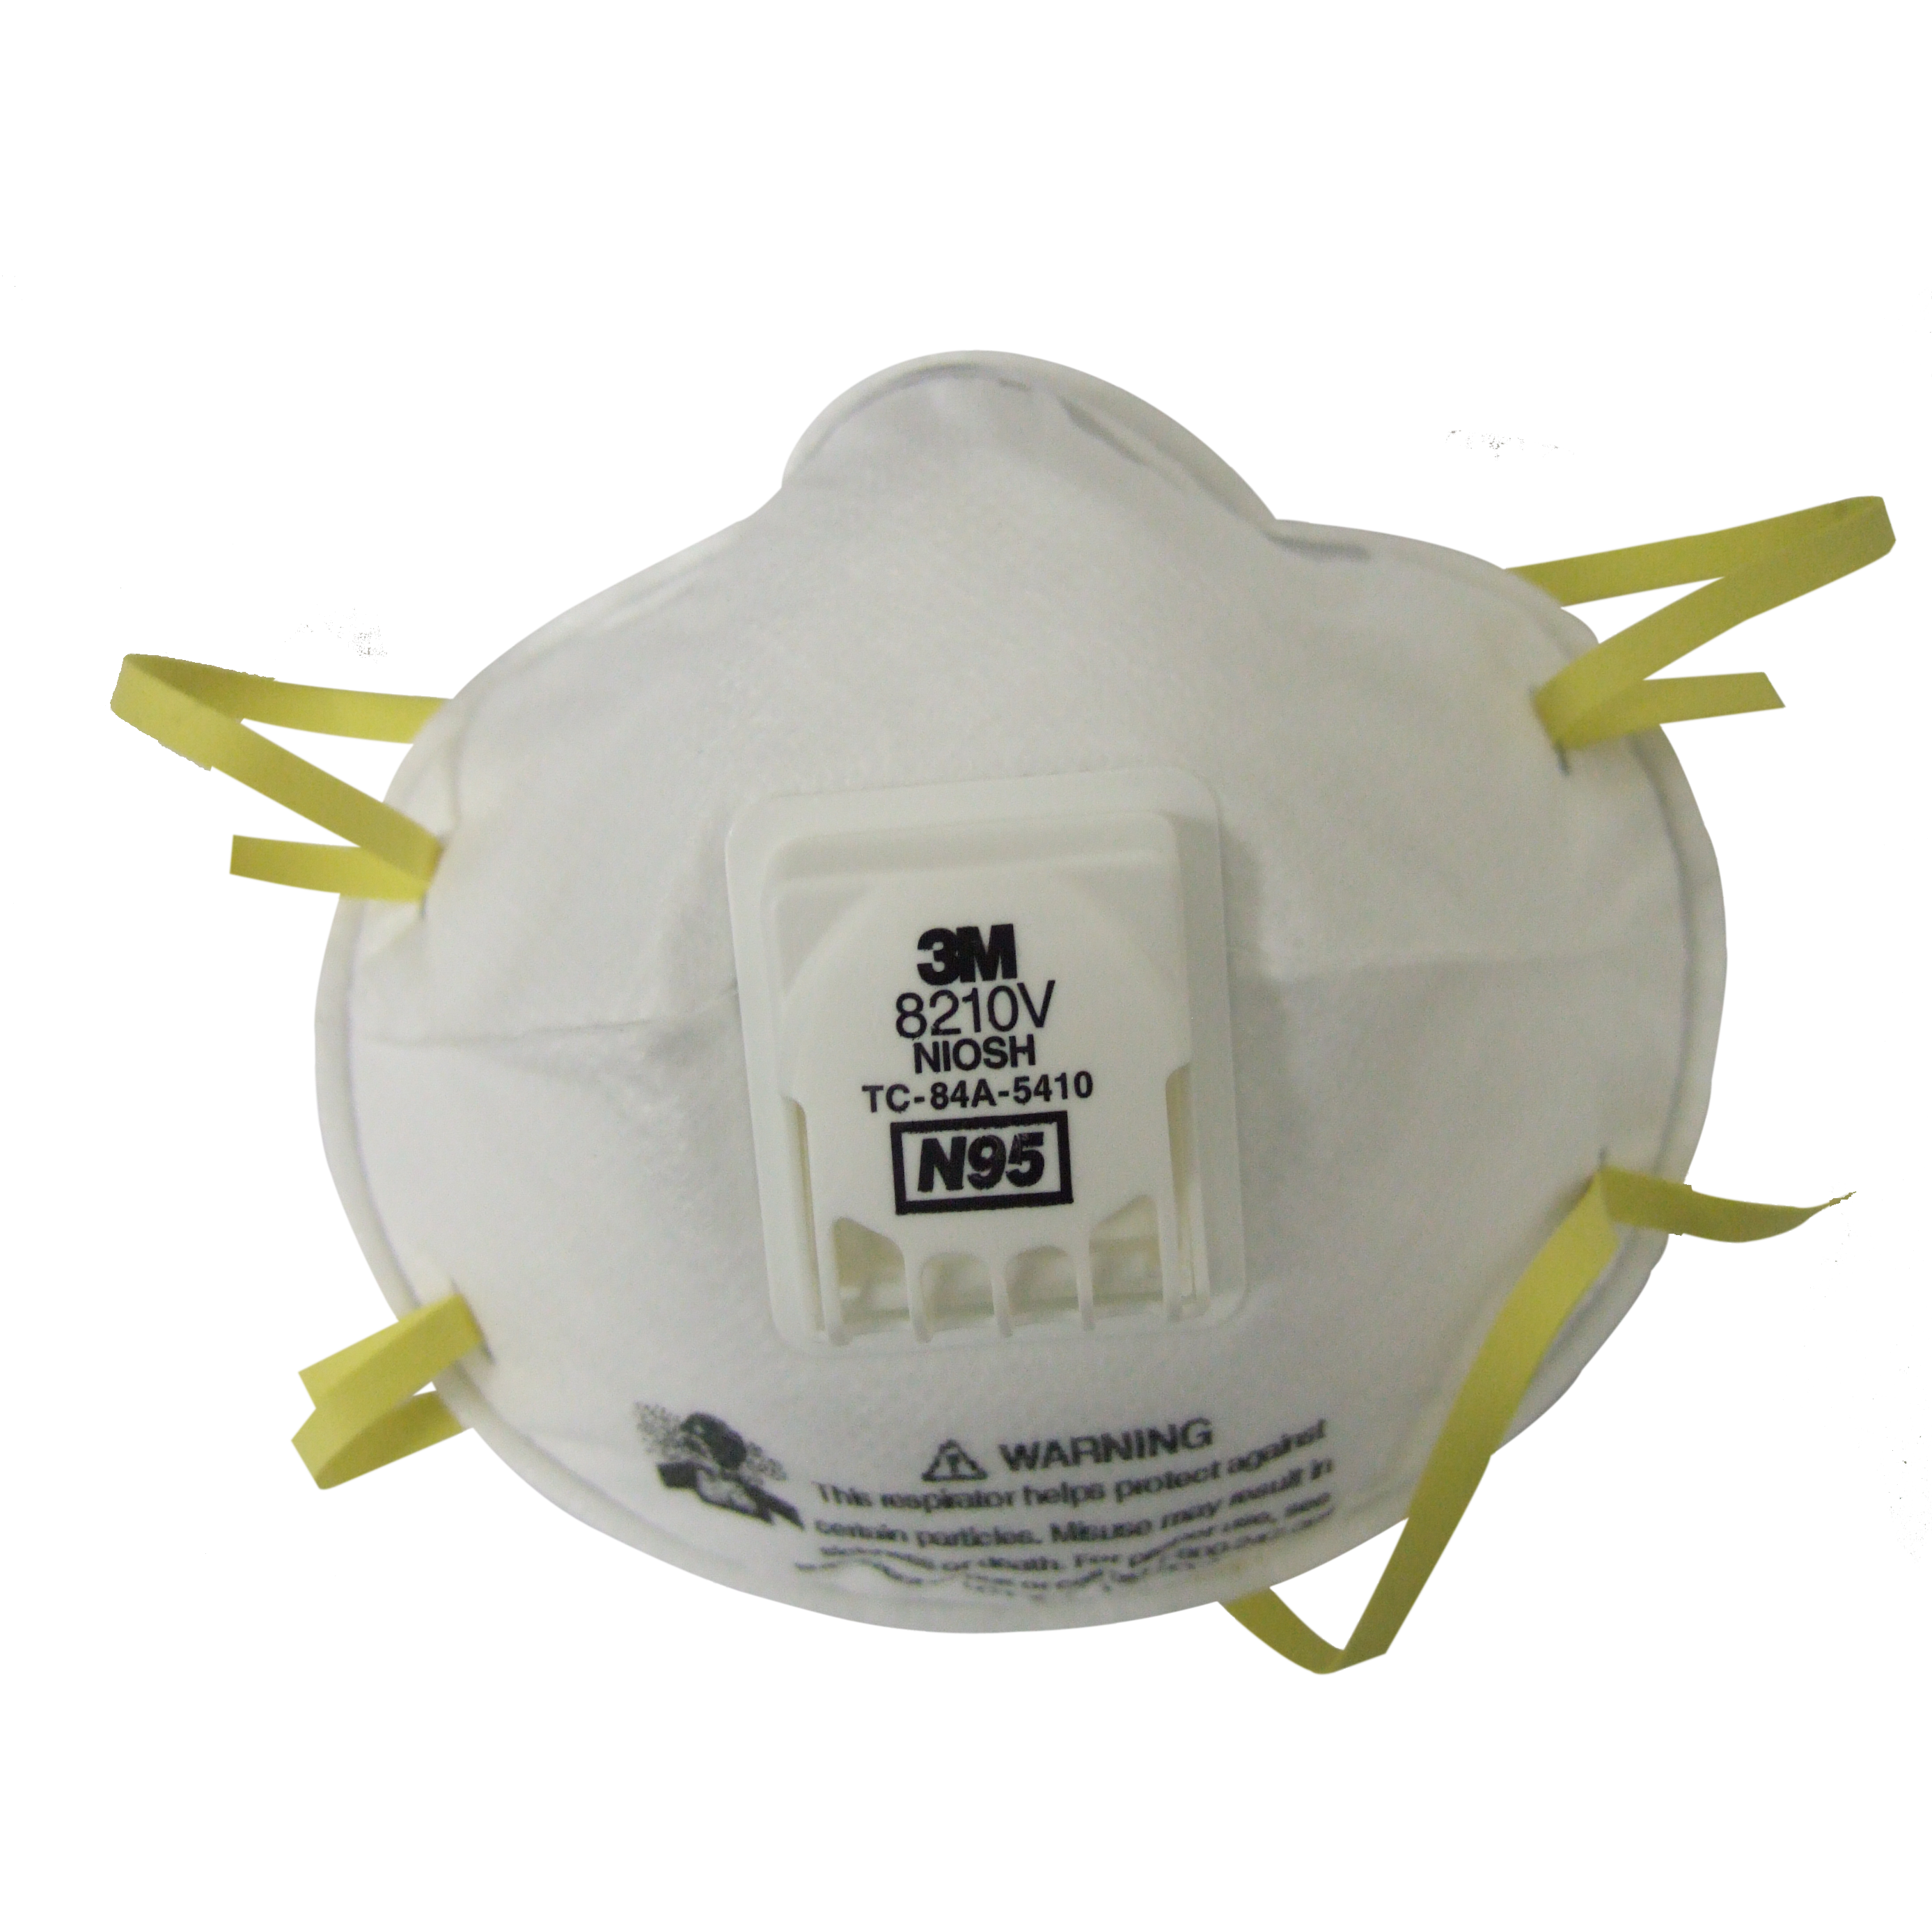 Masque respiratoire N100 avec soupape Cool Flow™ de 3M contre certaines  particules dangereuses. Vendu à l'unité.